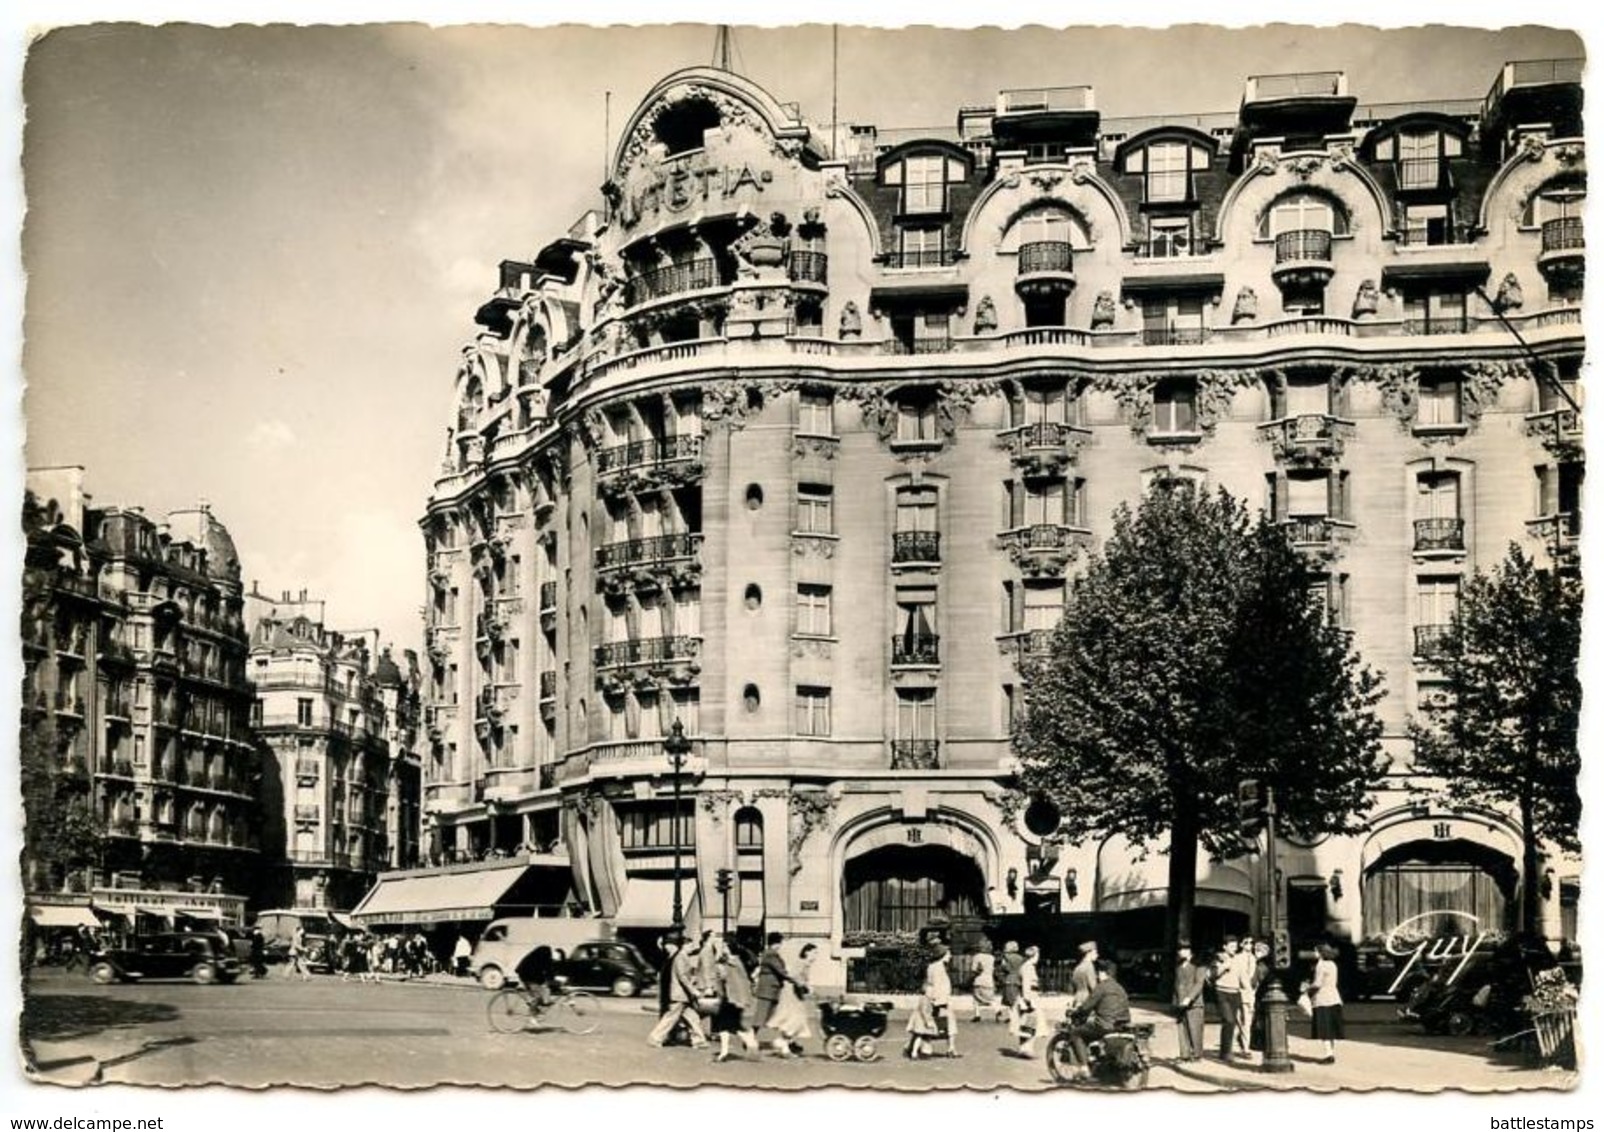 France Vintage RPPC Postcard Paris - Hotel Lutétia, Raspail Boulevard - Cafés, Hotels, Restaurants